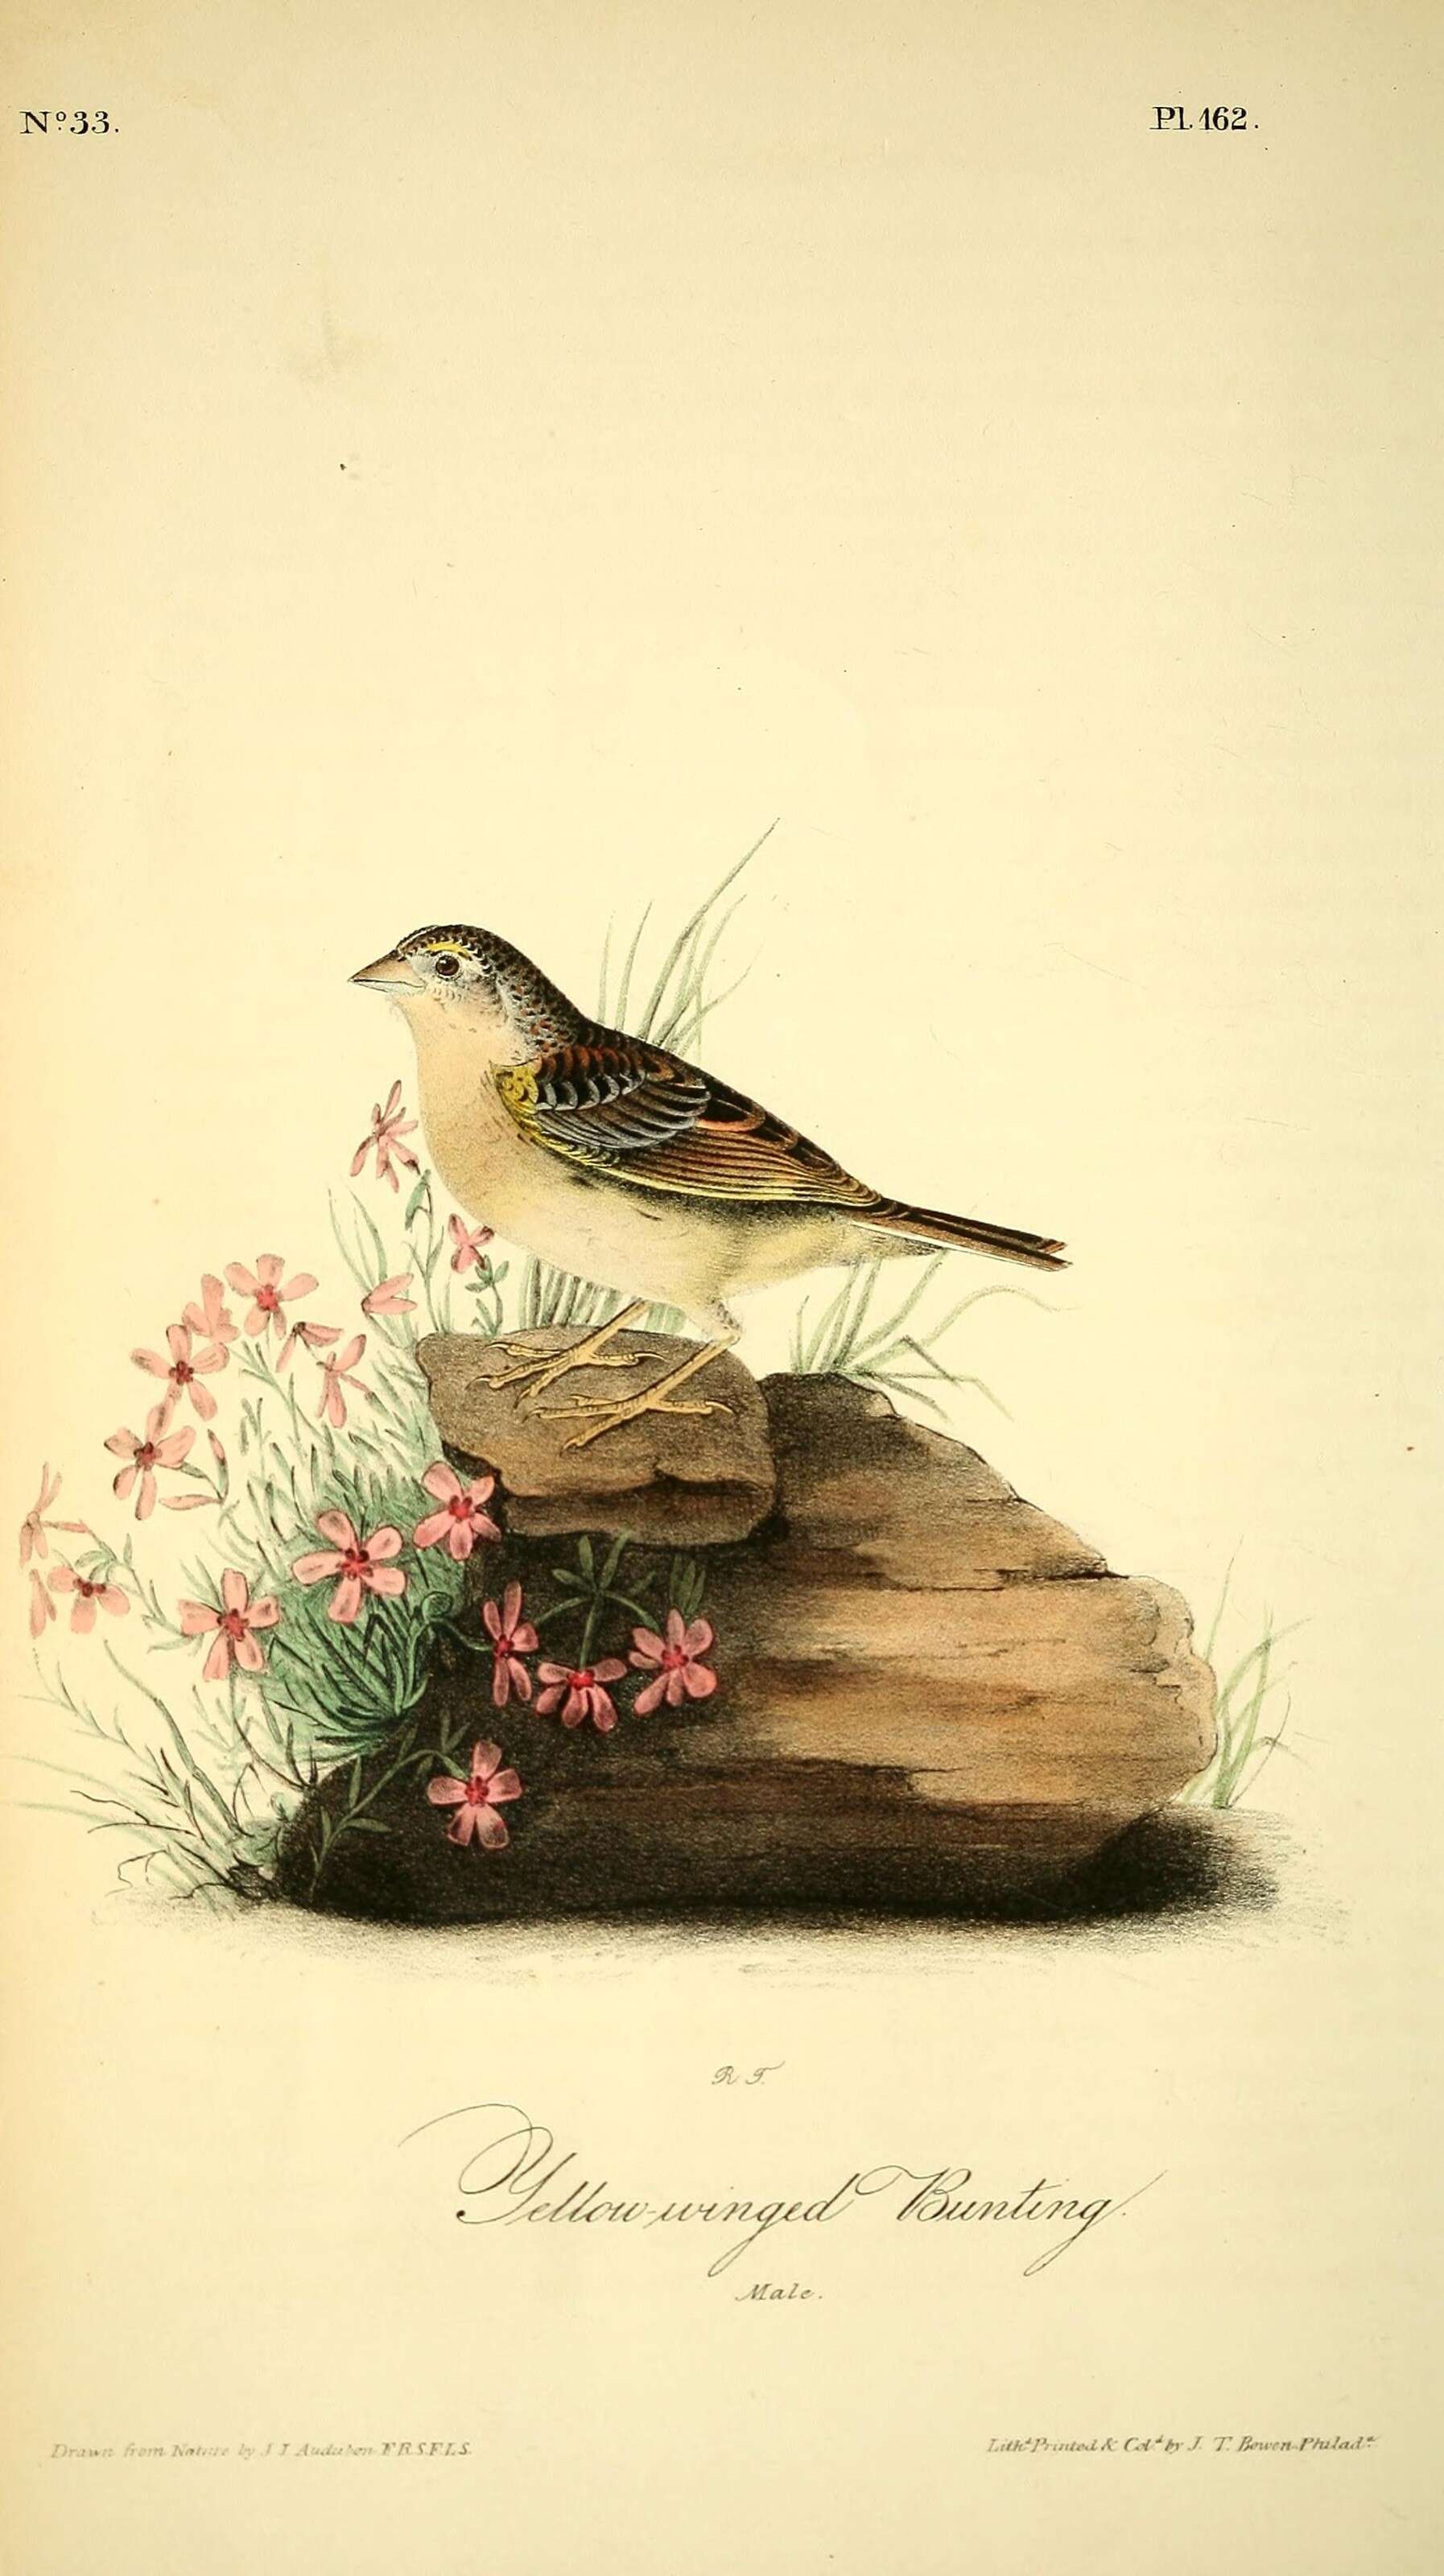 Image of Grasshopper Sparrow